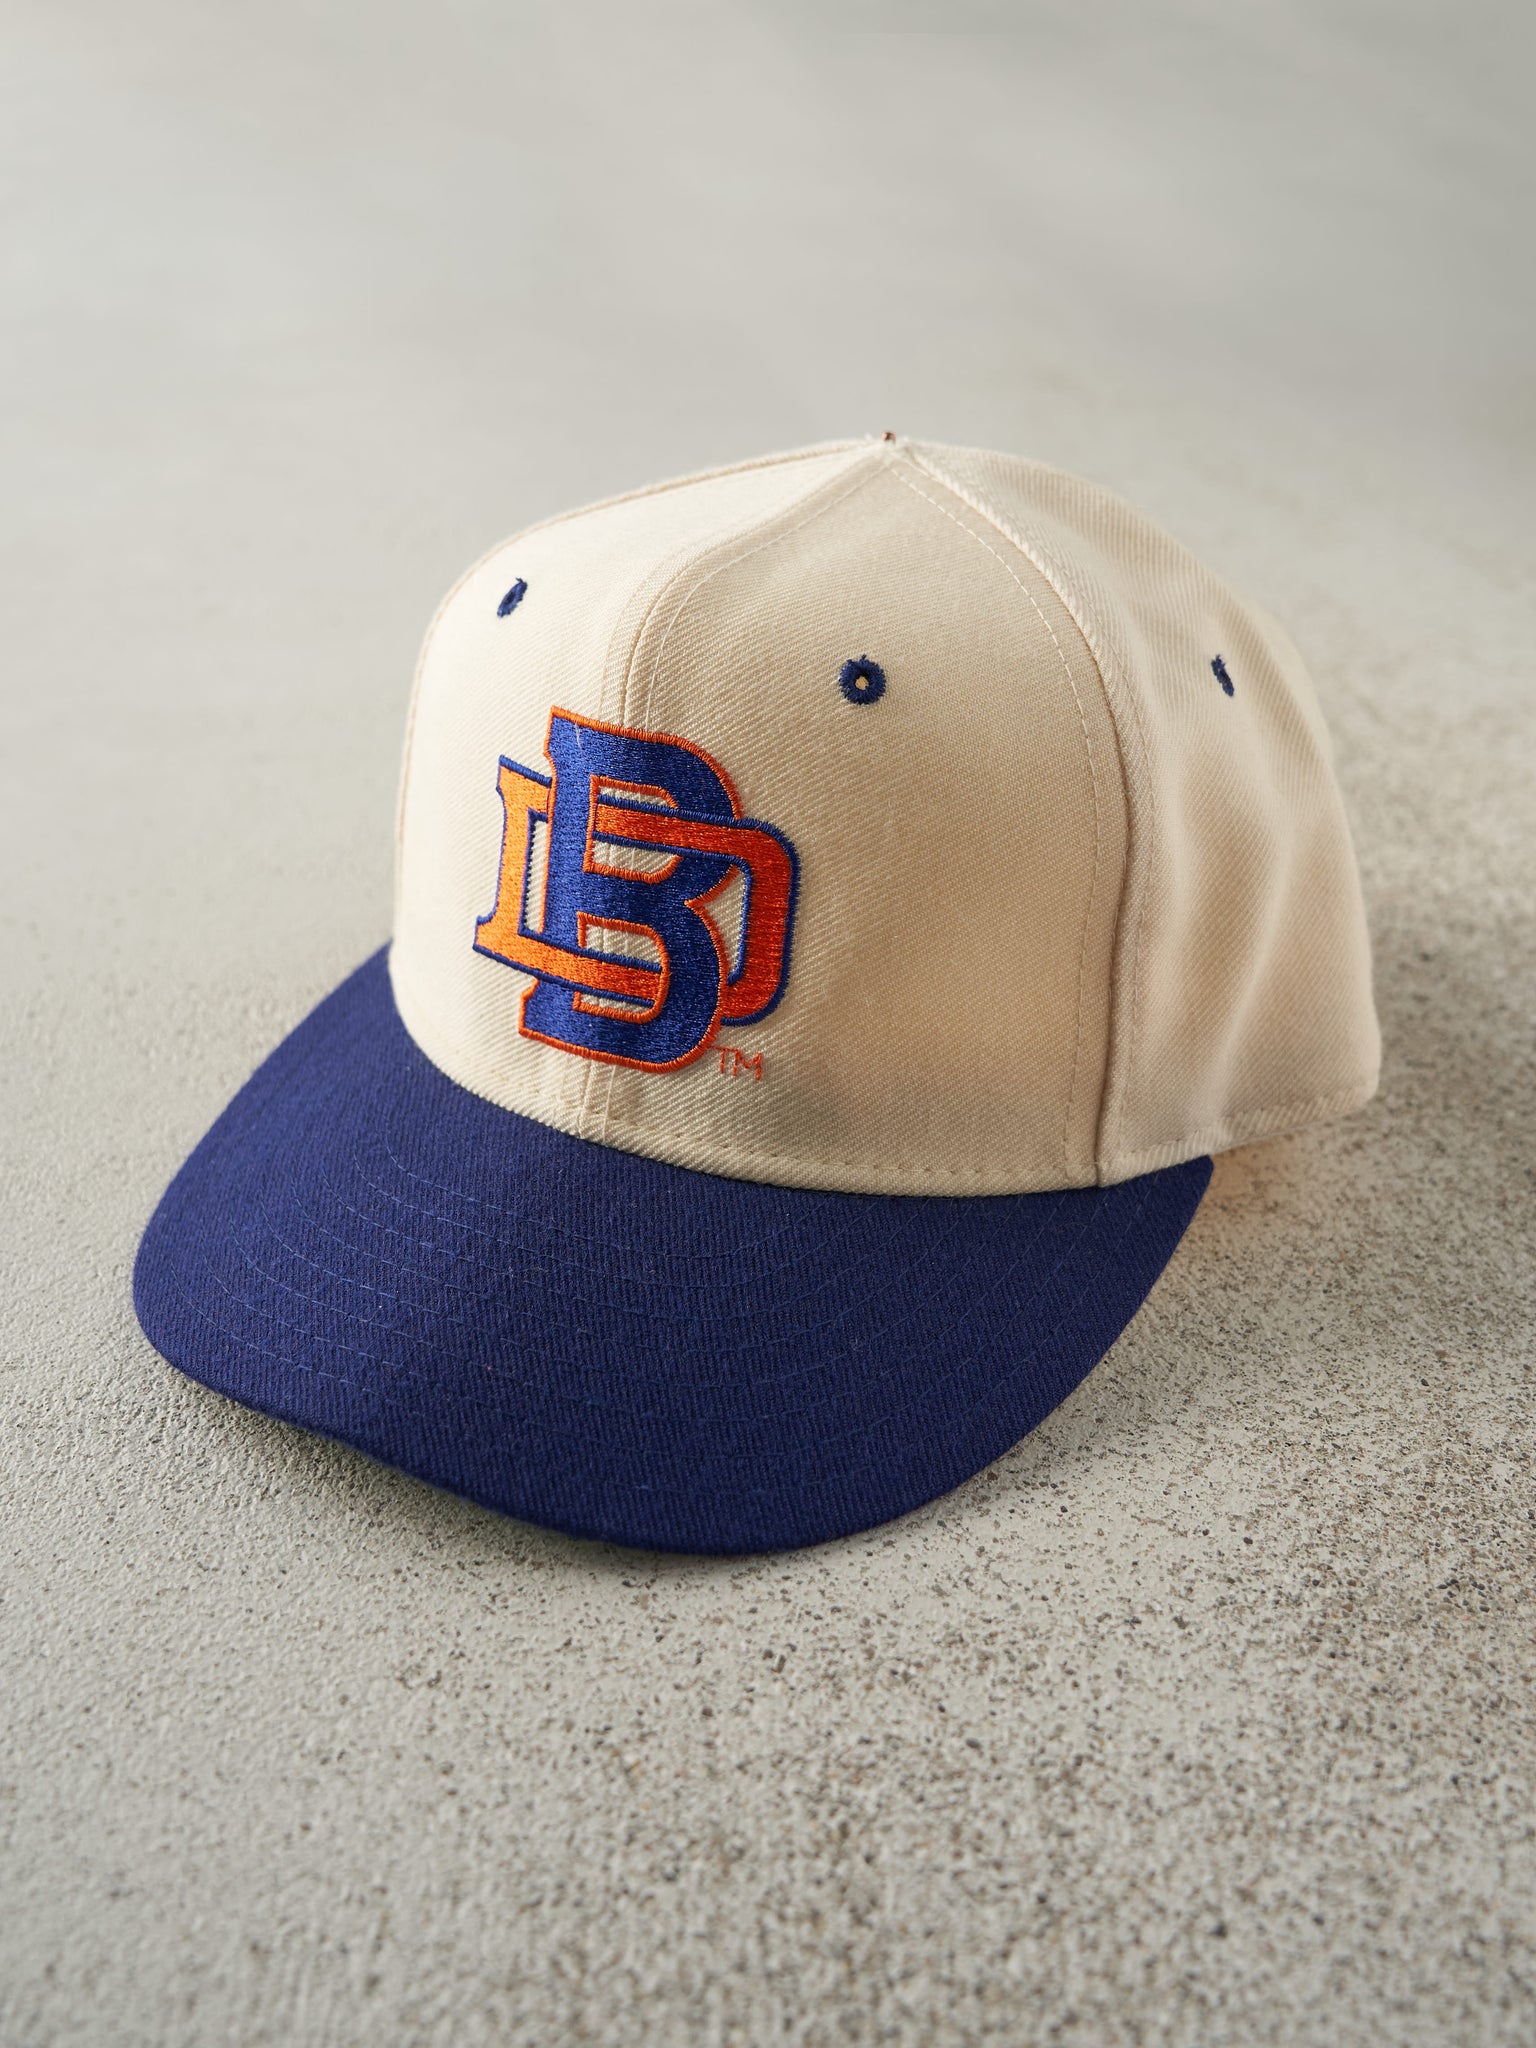 Vintage 90s Beige & Blue Embroidered Denver Broncos Wool Fitted Hat (7 1/2)